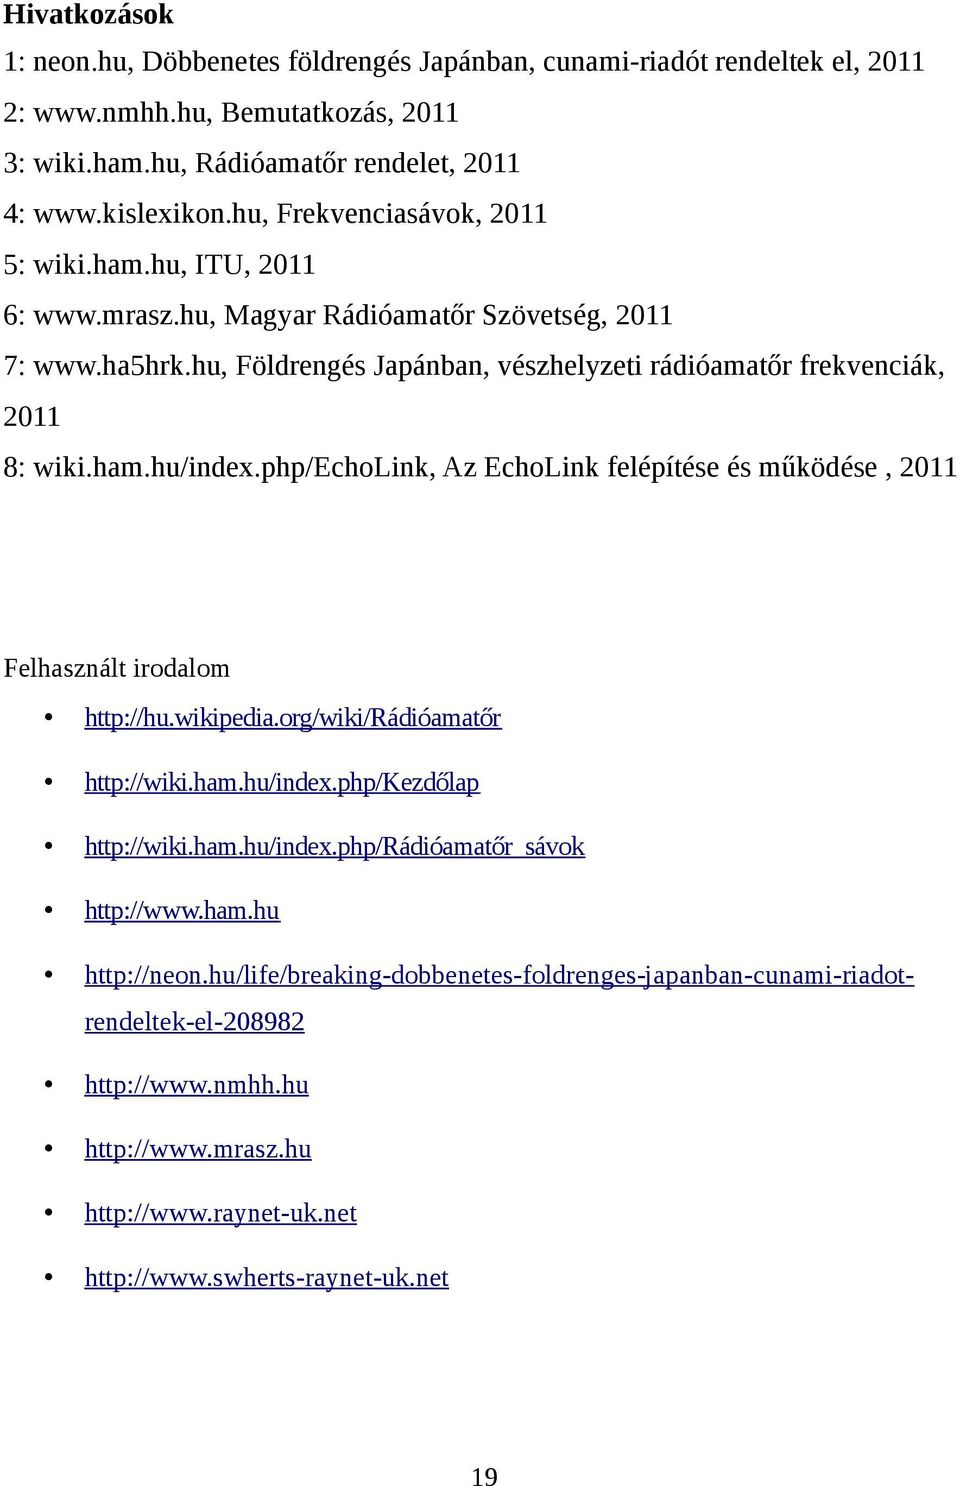 php/echolink, Az EchoLink felépítése és működése, 2011 Felhasznált irodalom http://hu.wikipedia.org/wiki/rádióamatőr http://wiki.ham.hu/index.php/kezdőlap http://wiki.ham.hu/index.php/rádióamatőr_sávok http://www.